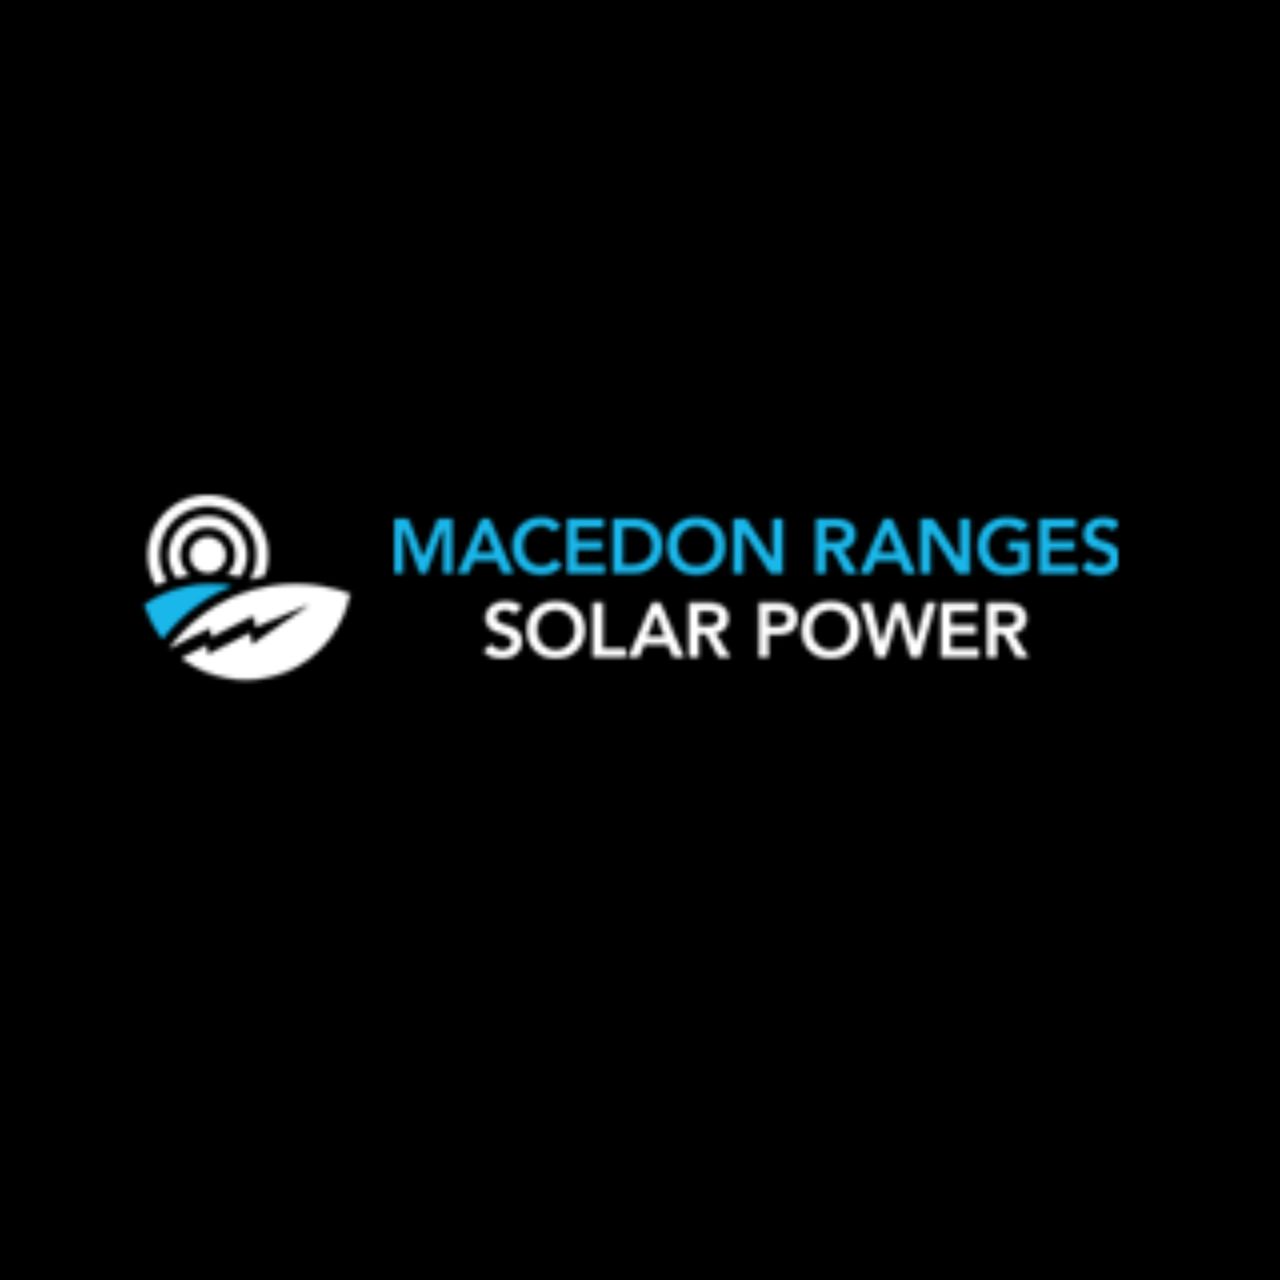 Macedon Ranges Solar Power